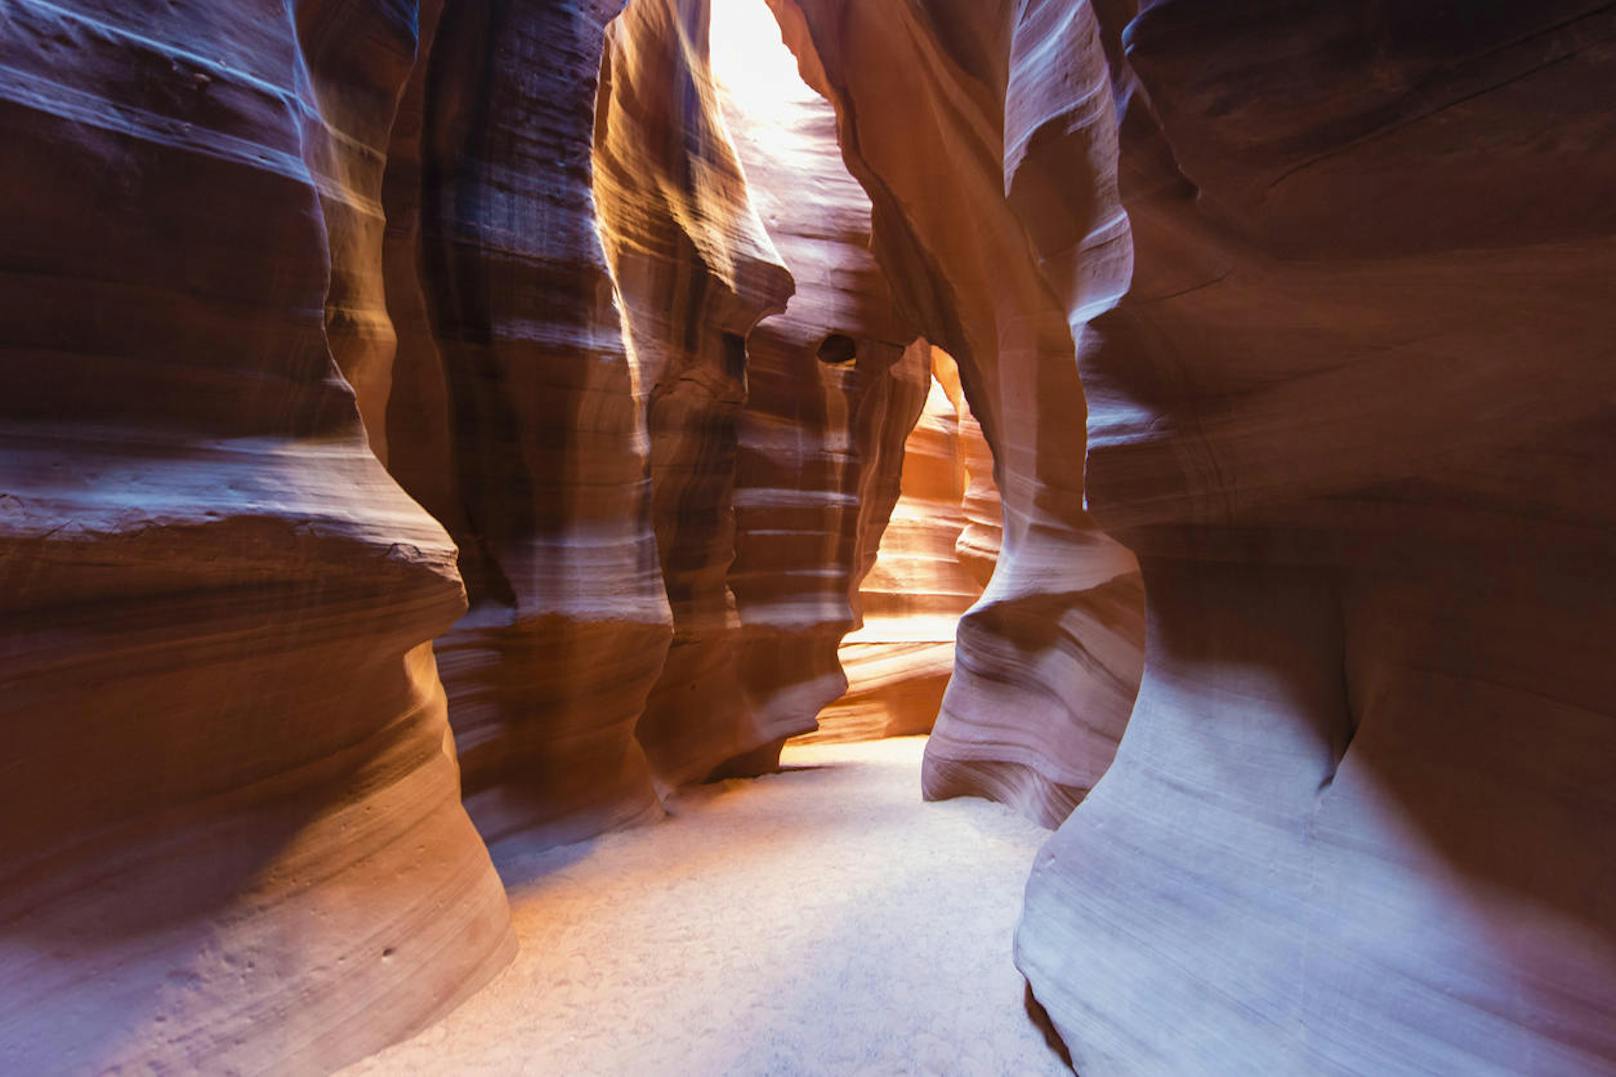 <b>Antelope Canyon - Page, Arizona, USA</b>
Das Markanteste: seine geschwungenen und von fließenden Mustern durchzogenen Wände, die im Laufe vieler Jahrhunderte durch Erosion entstanden. Der Canyon bietet mehrere Abschnitte, die durch unterschiedliche Lichteinfälle in verschiedenen Farben zu schimmern scheinen.